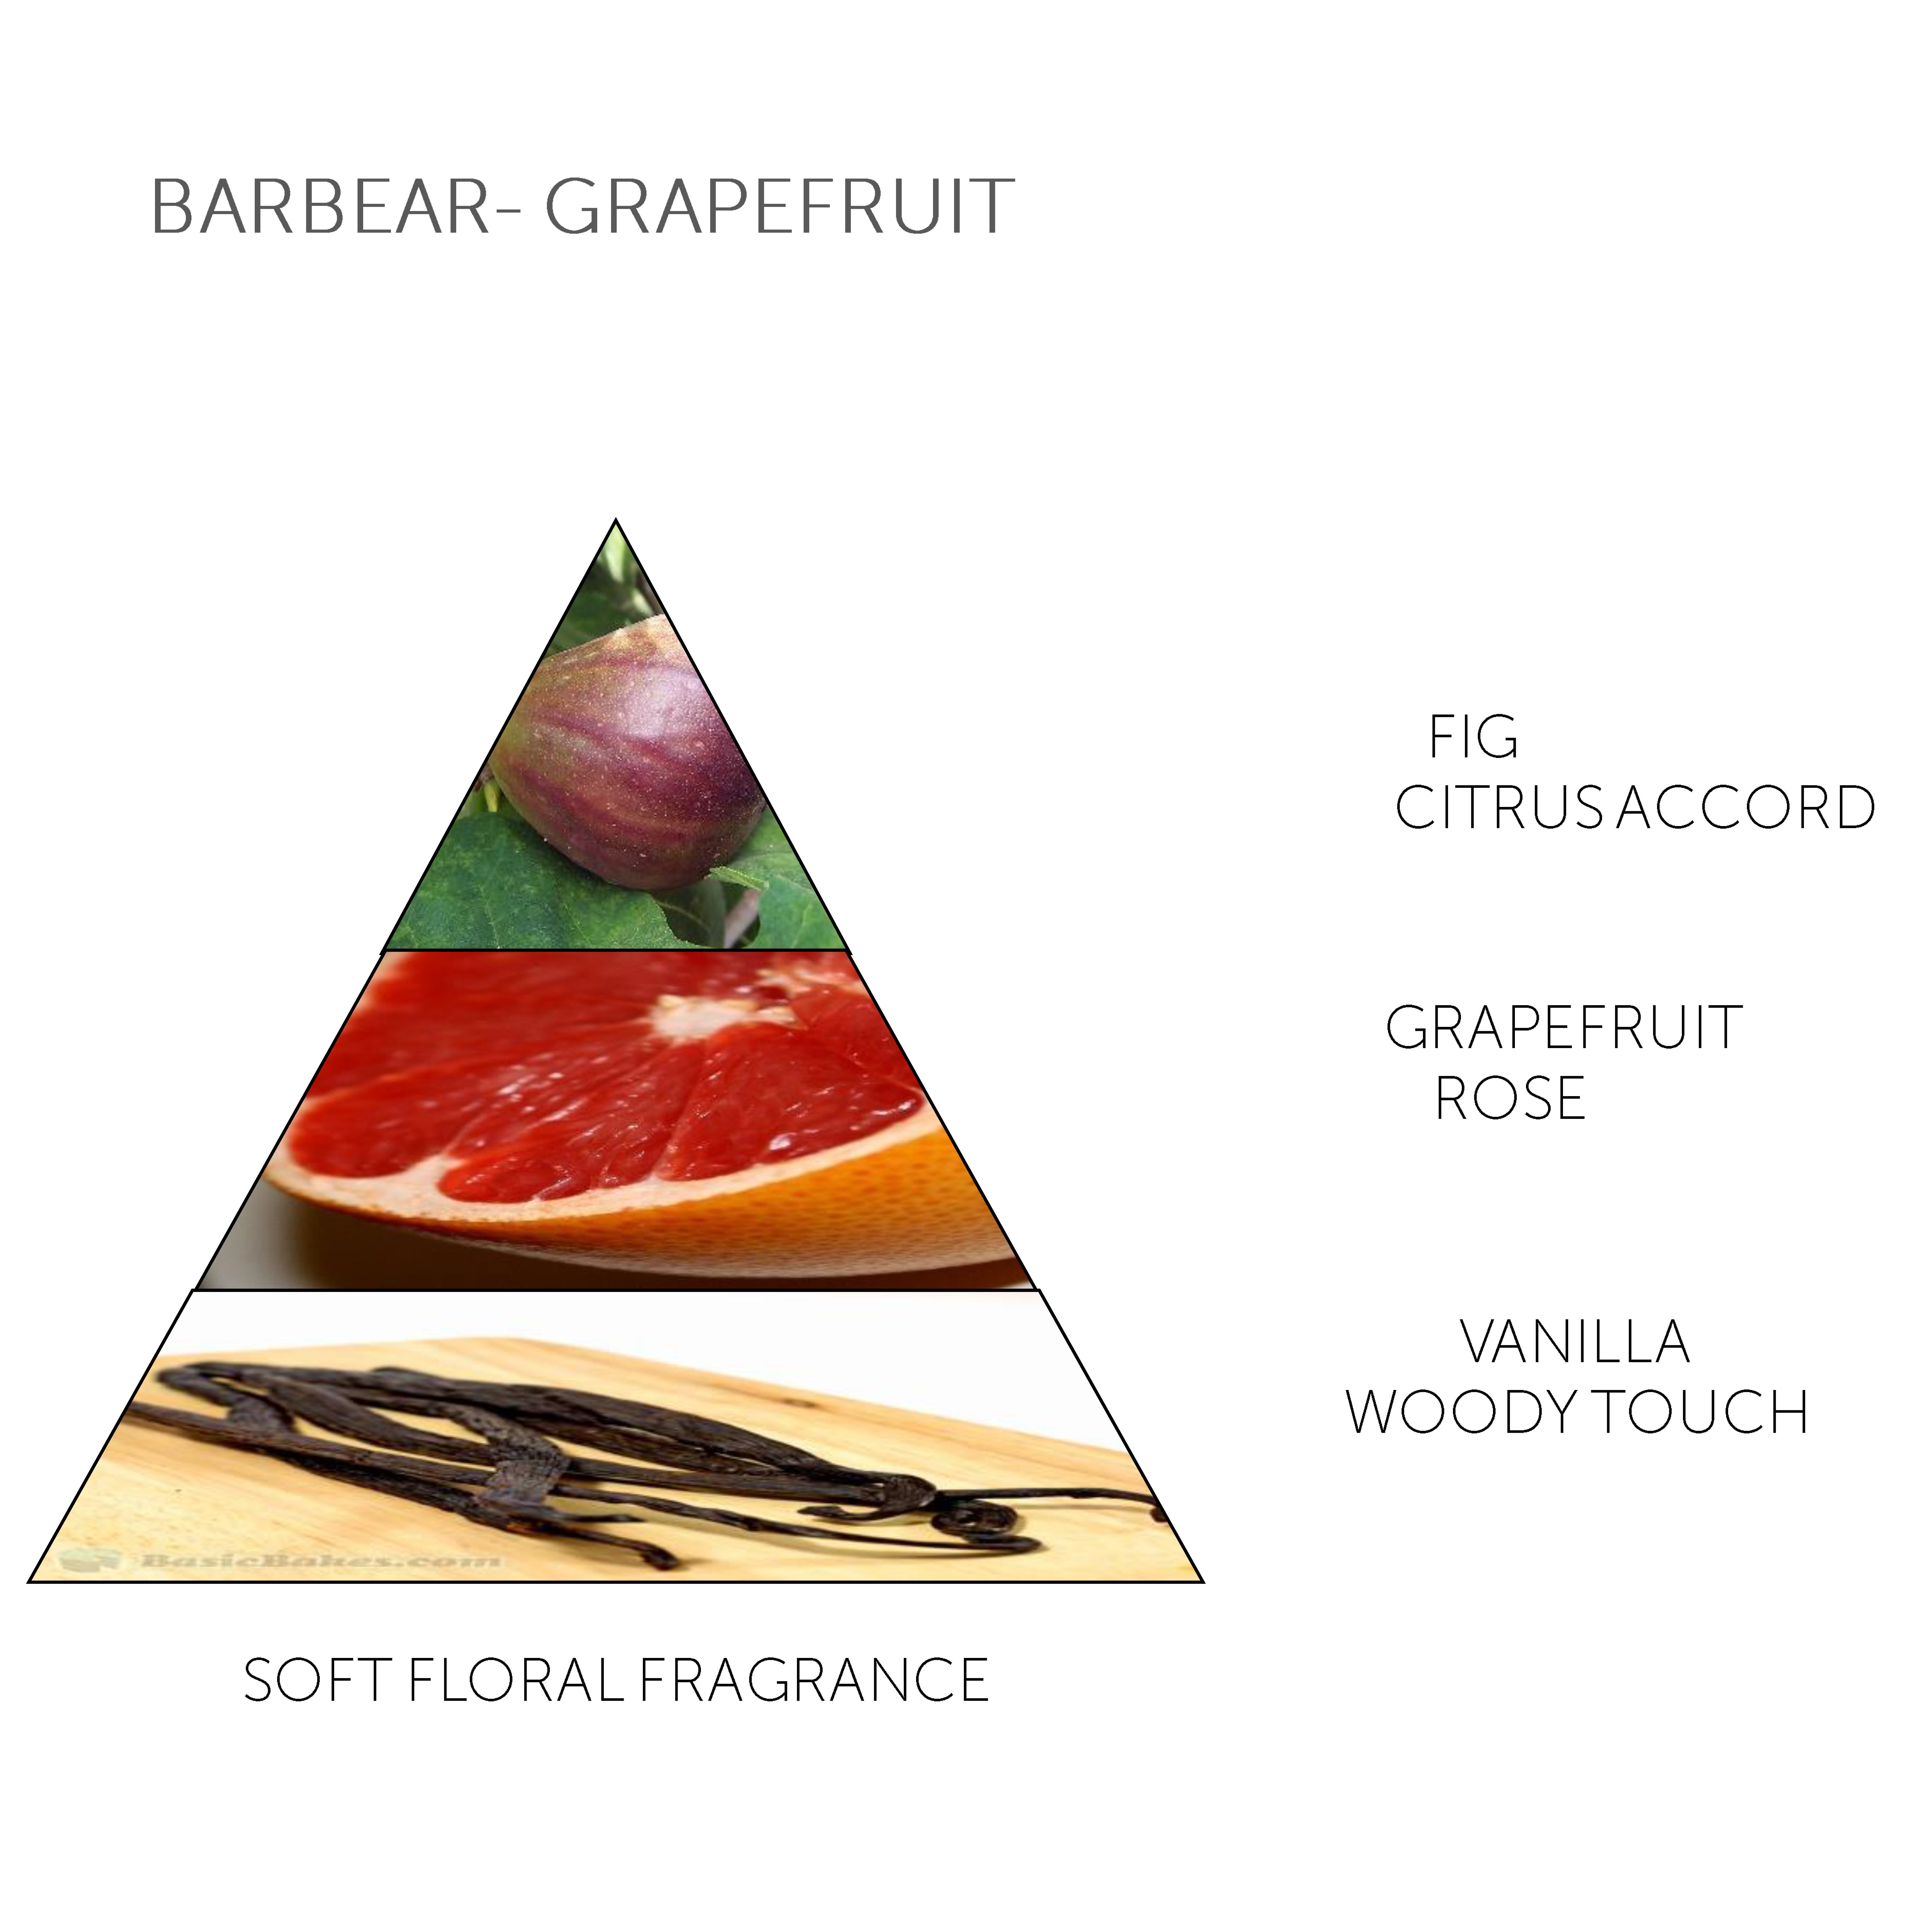 Claus Porto Soap Bar Barbear Grapefruit Fig 150g - 4.1 - CP-F001W